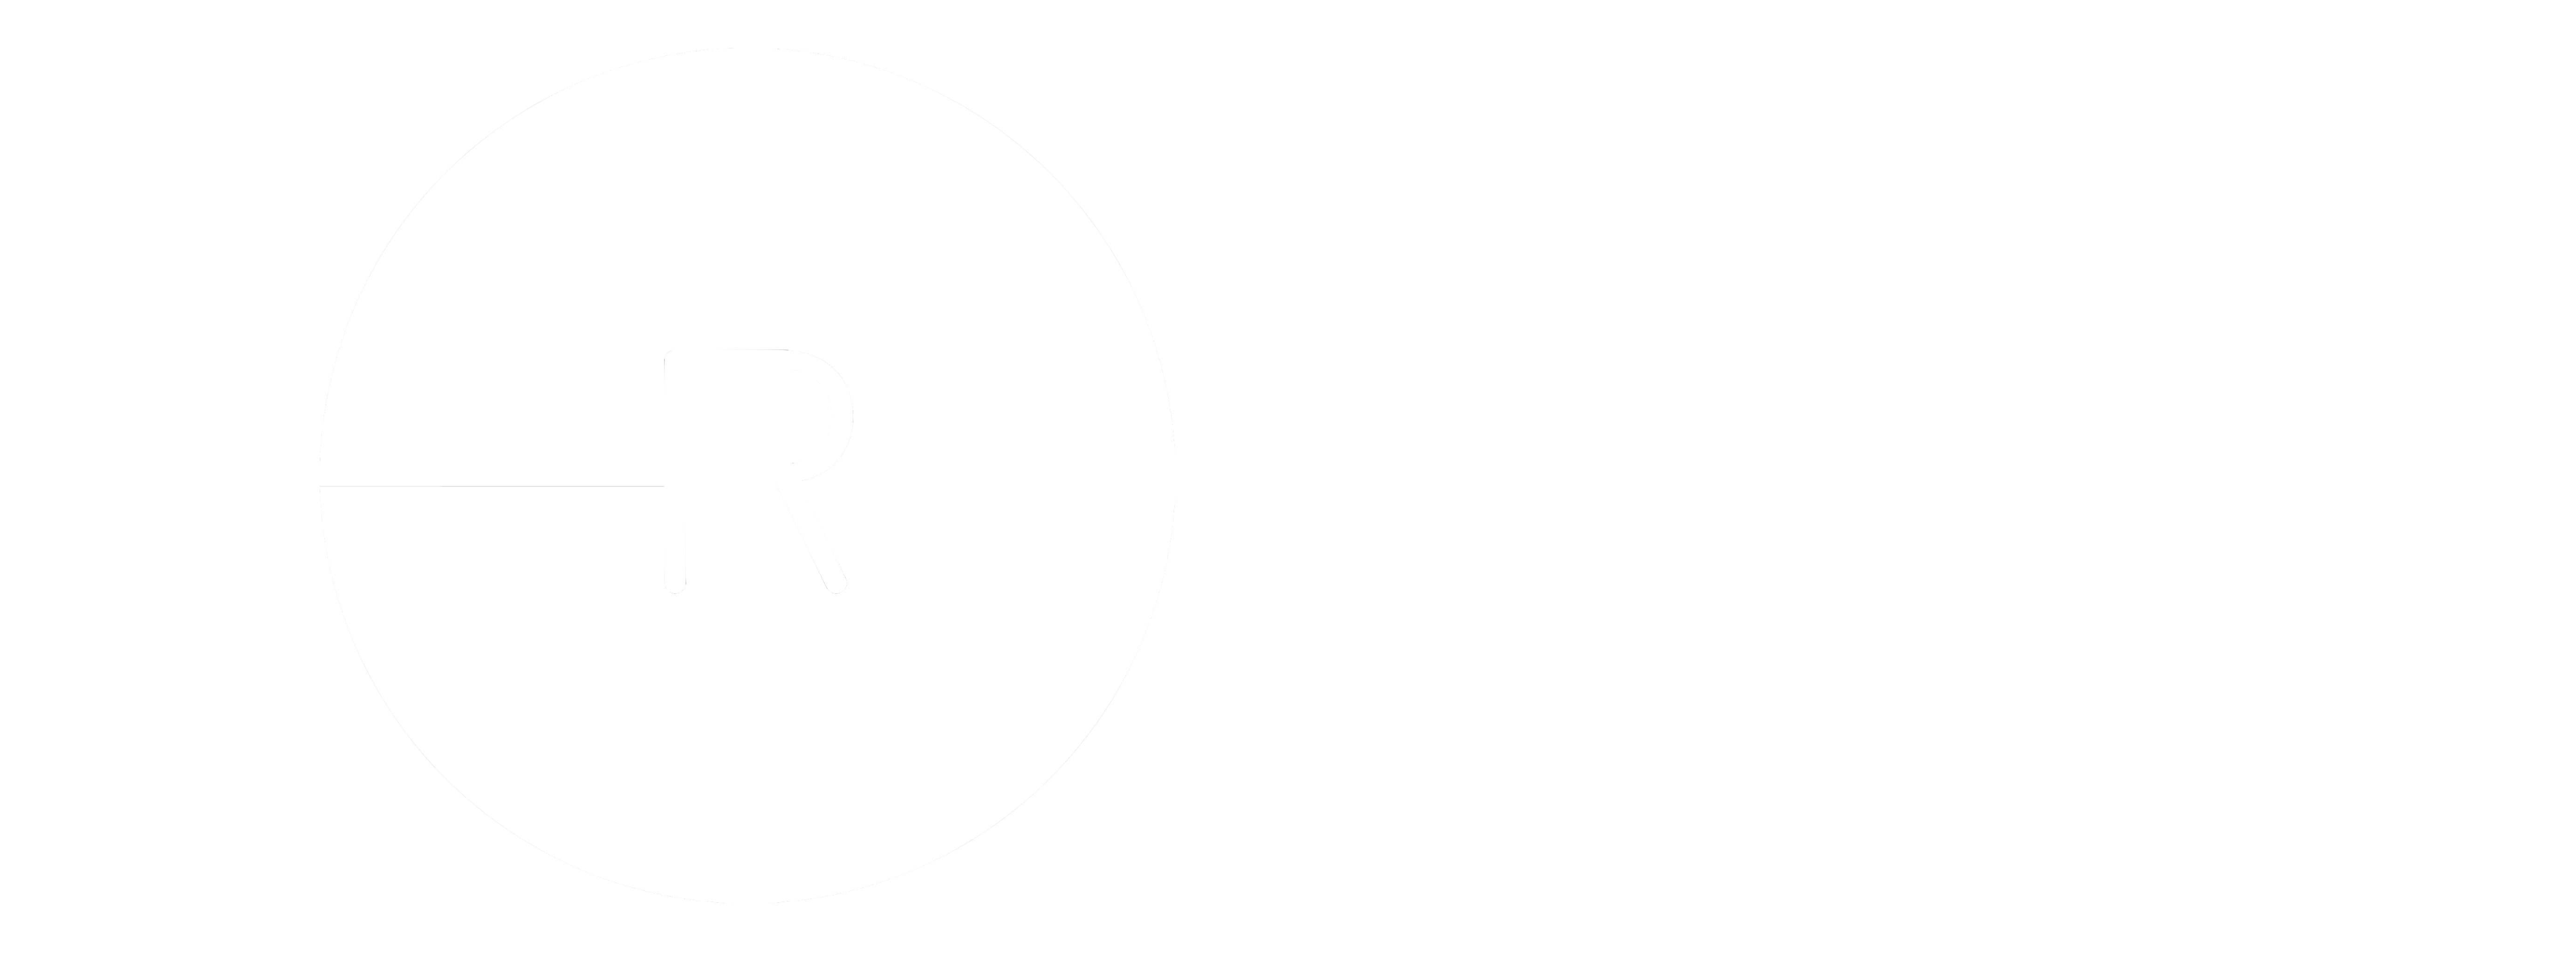 RADIUS Church